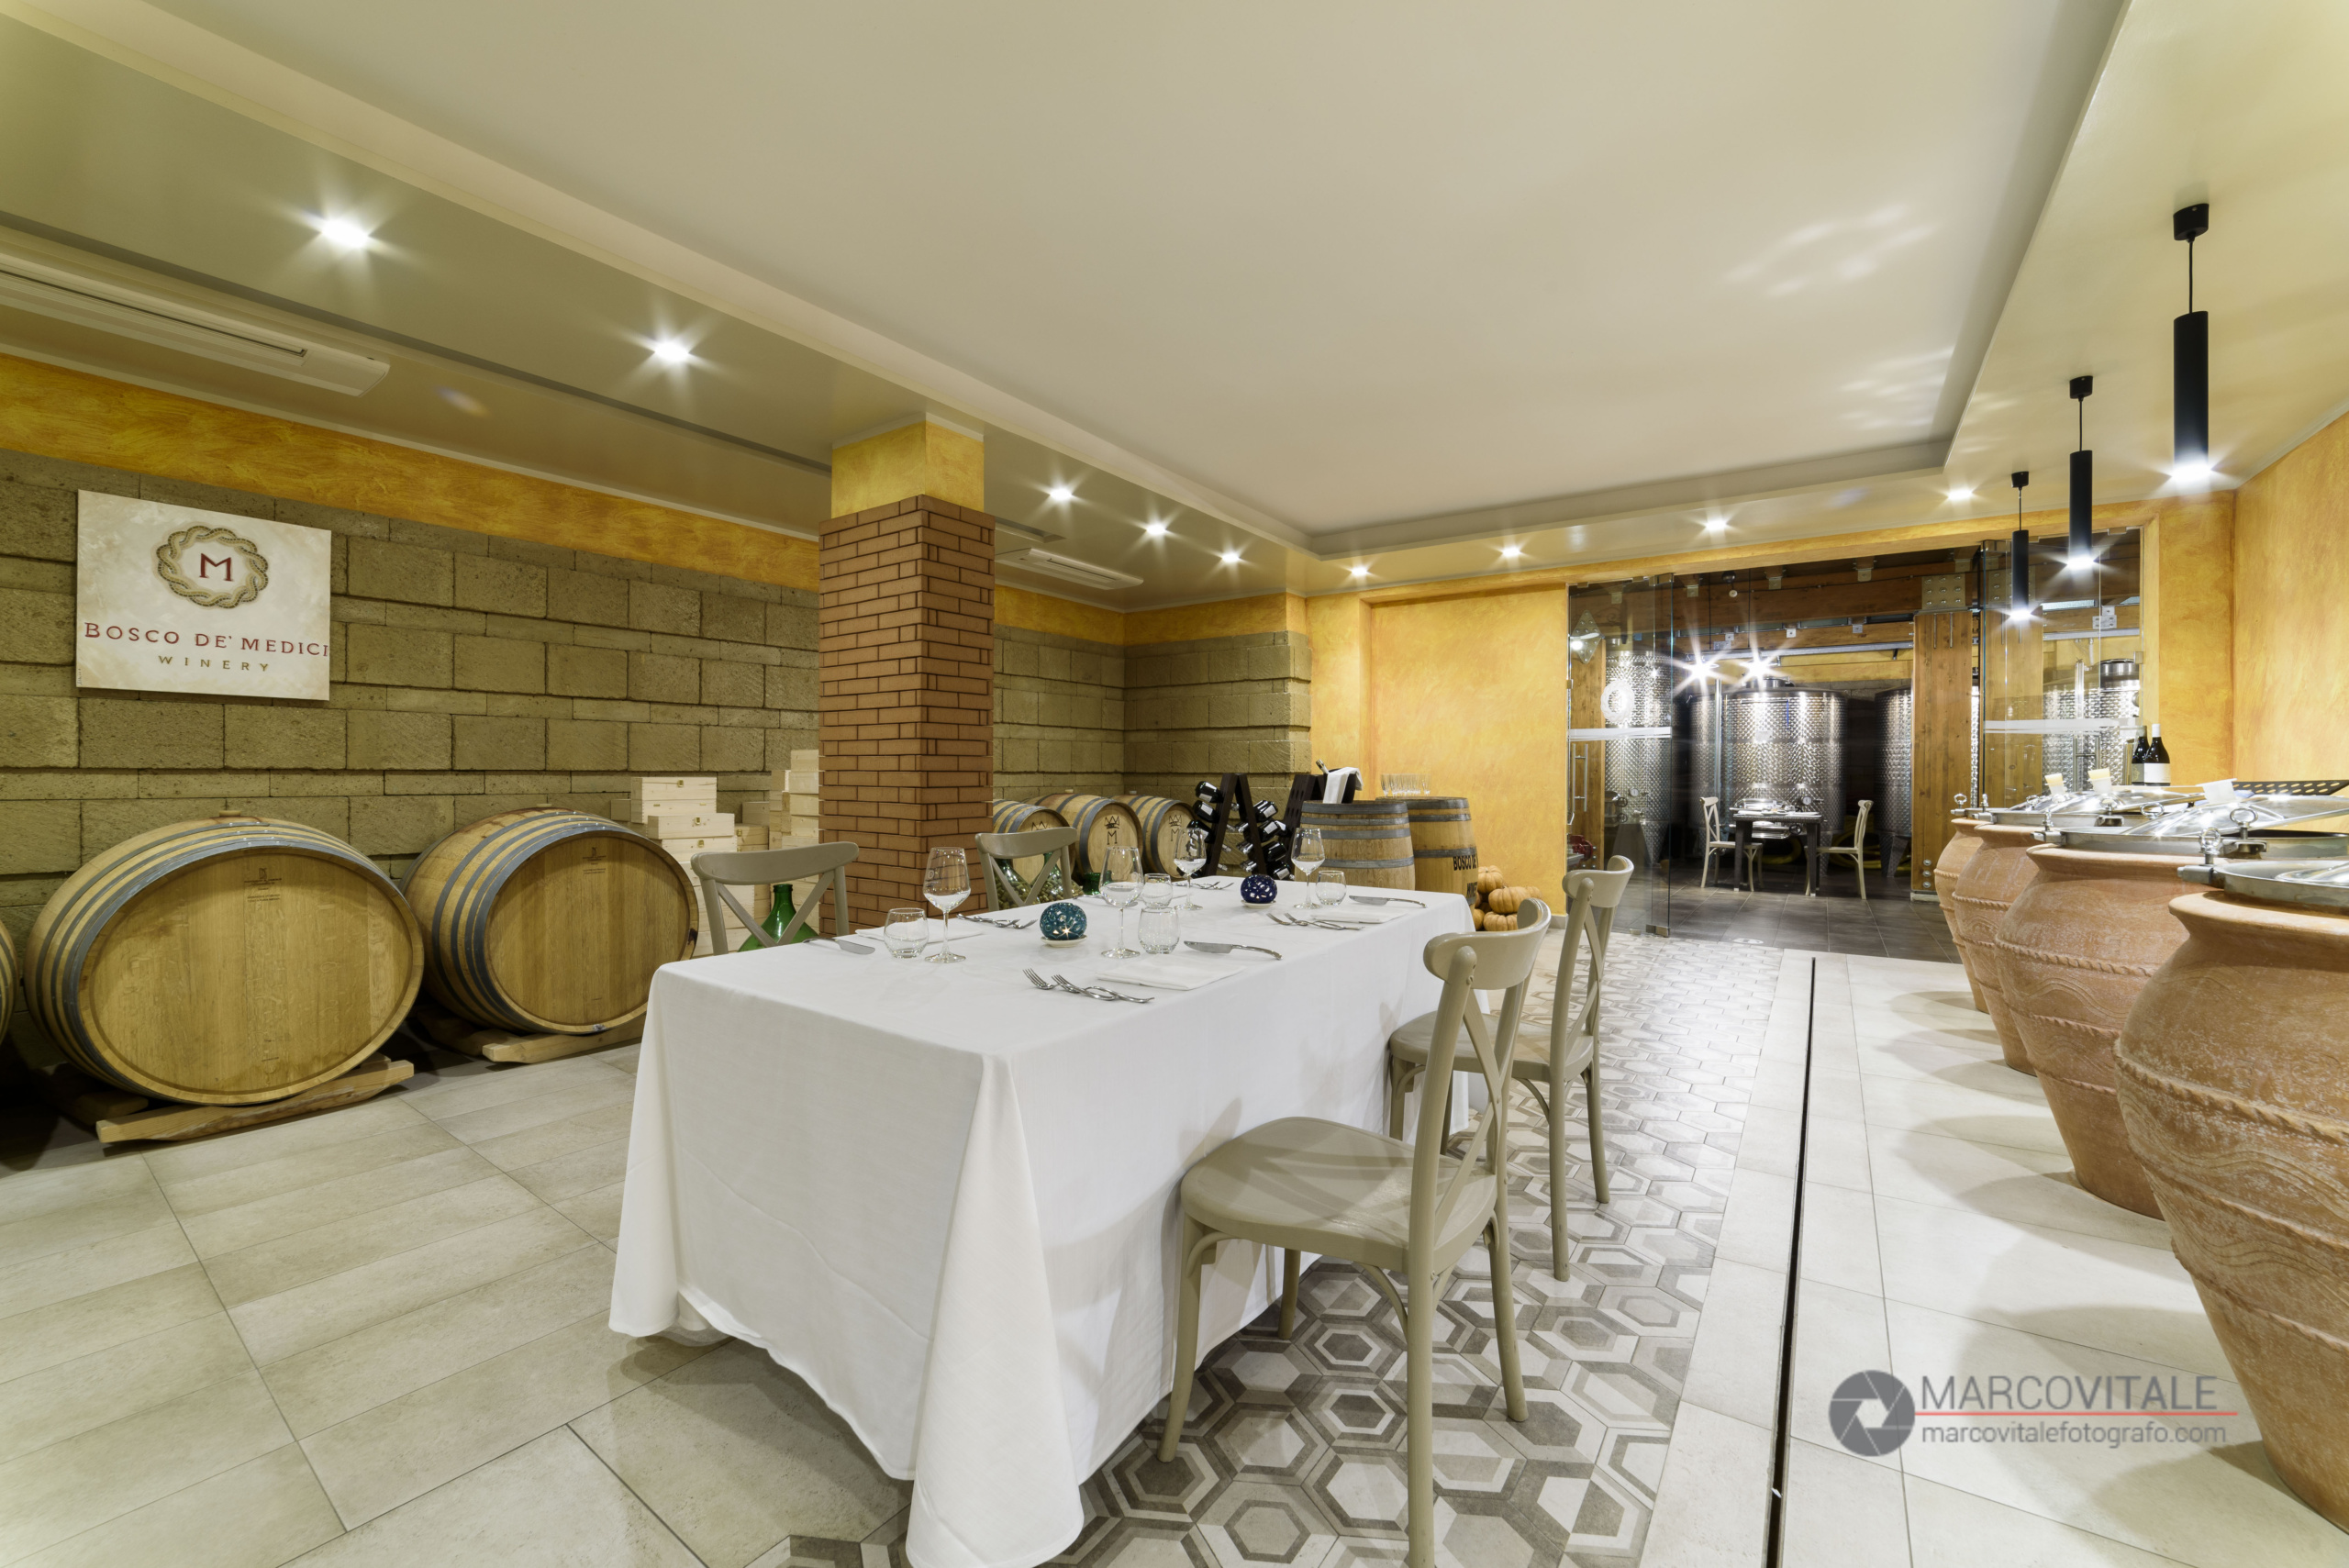 Servizio fotografico per ristorante Bosco de Medici Winery Pompei